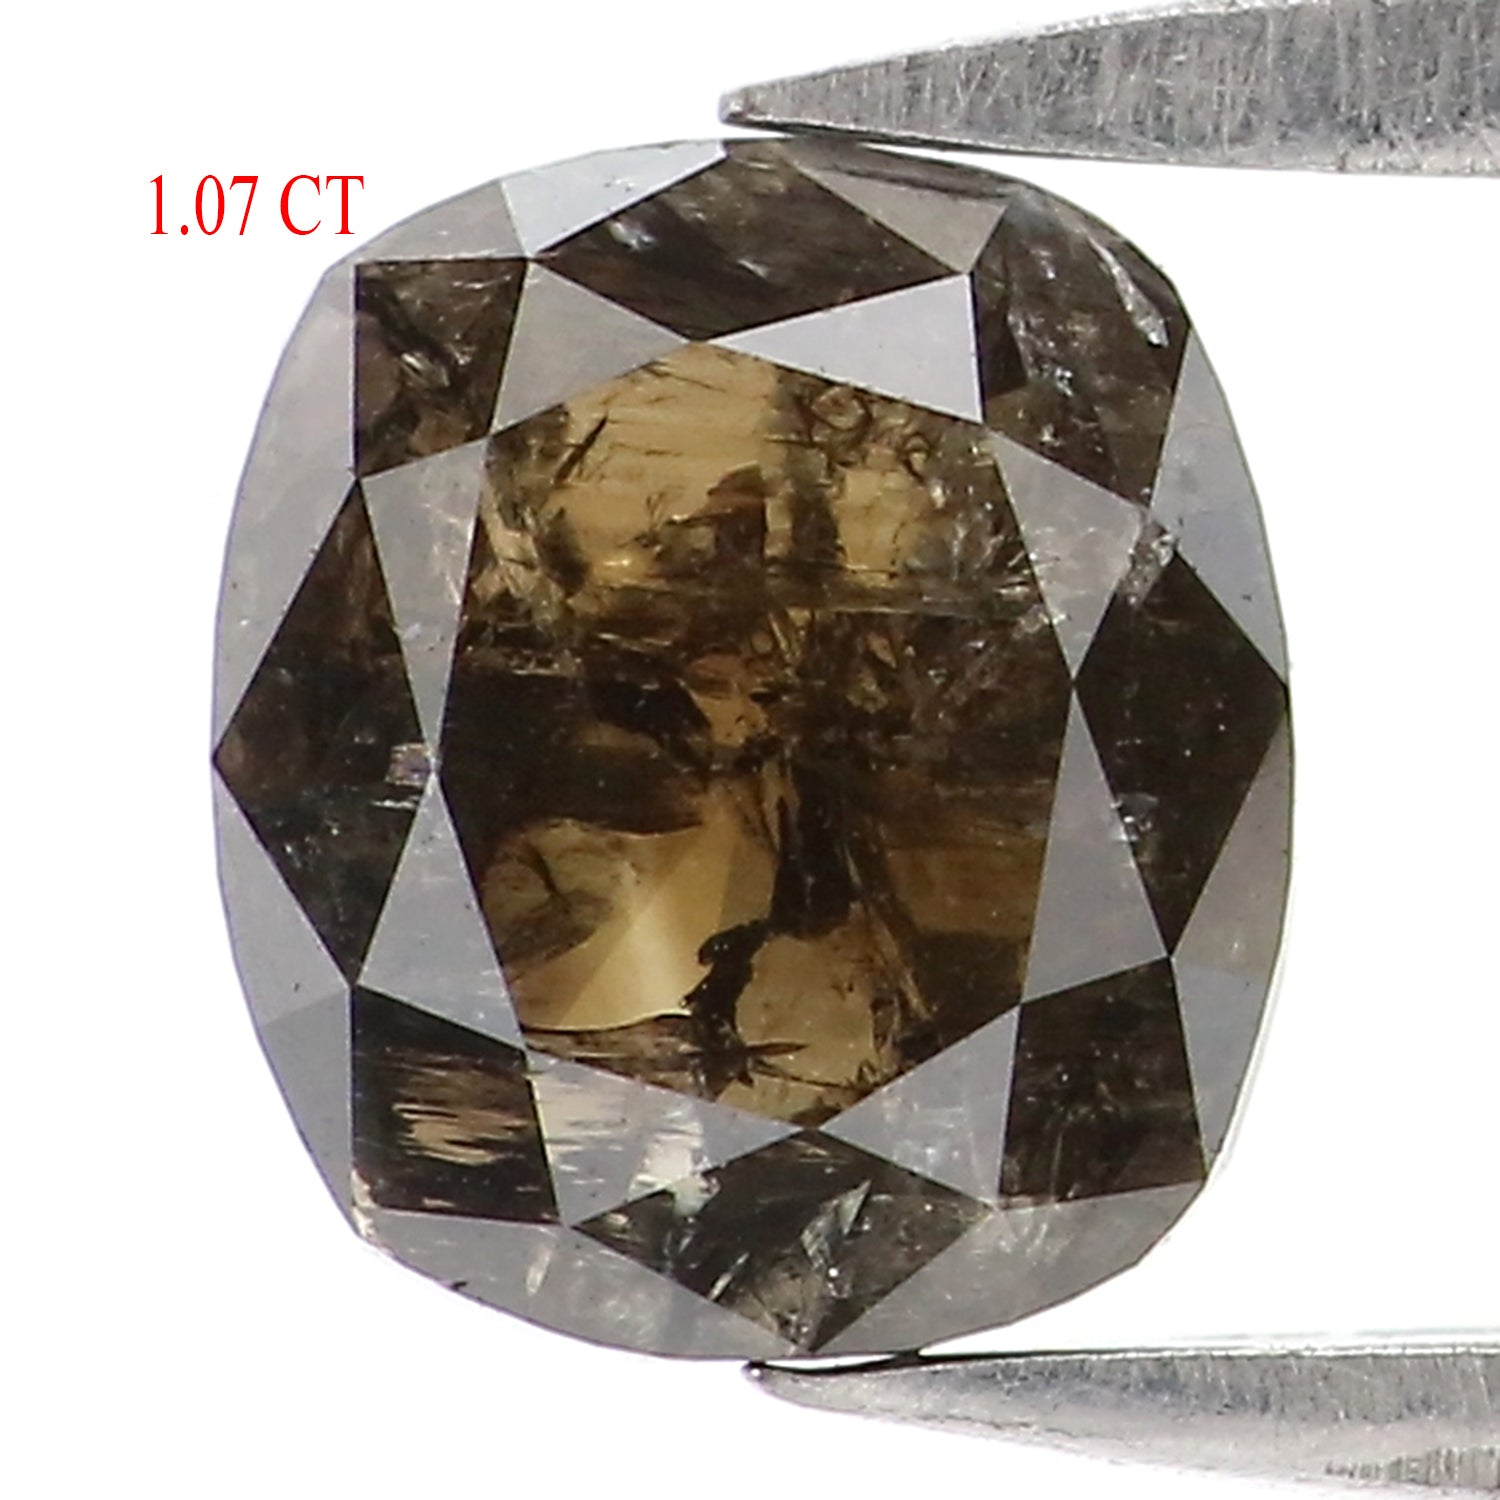 1.07 CT Natural Loose Cushion Shape Diamond Brown Color Cushion Cut Diamond 6.35 MM Natural Loose Diamond Cushion Rose Cut Diamond QL2856